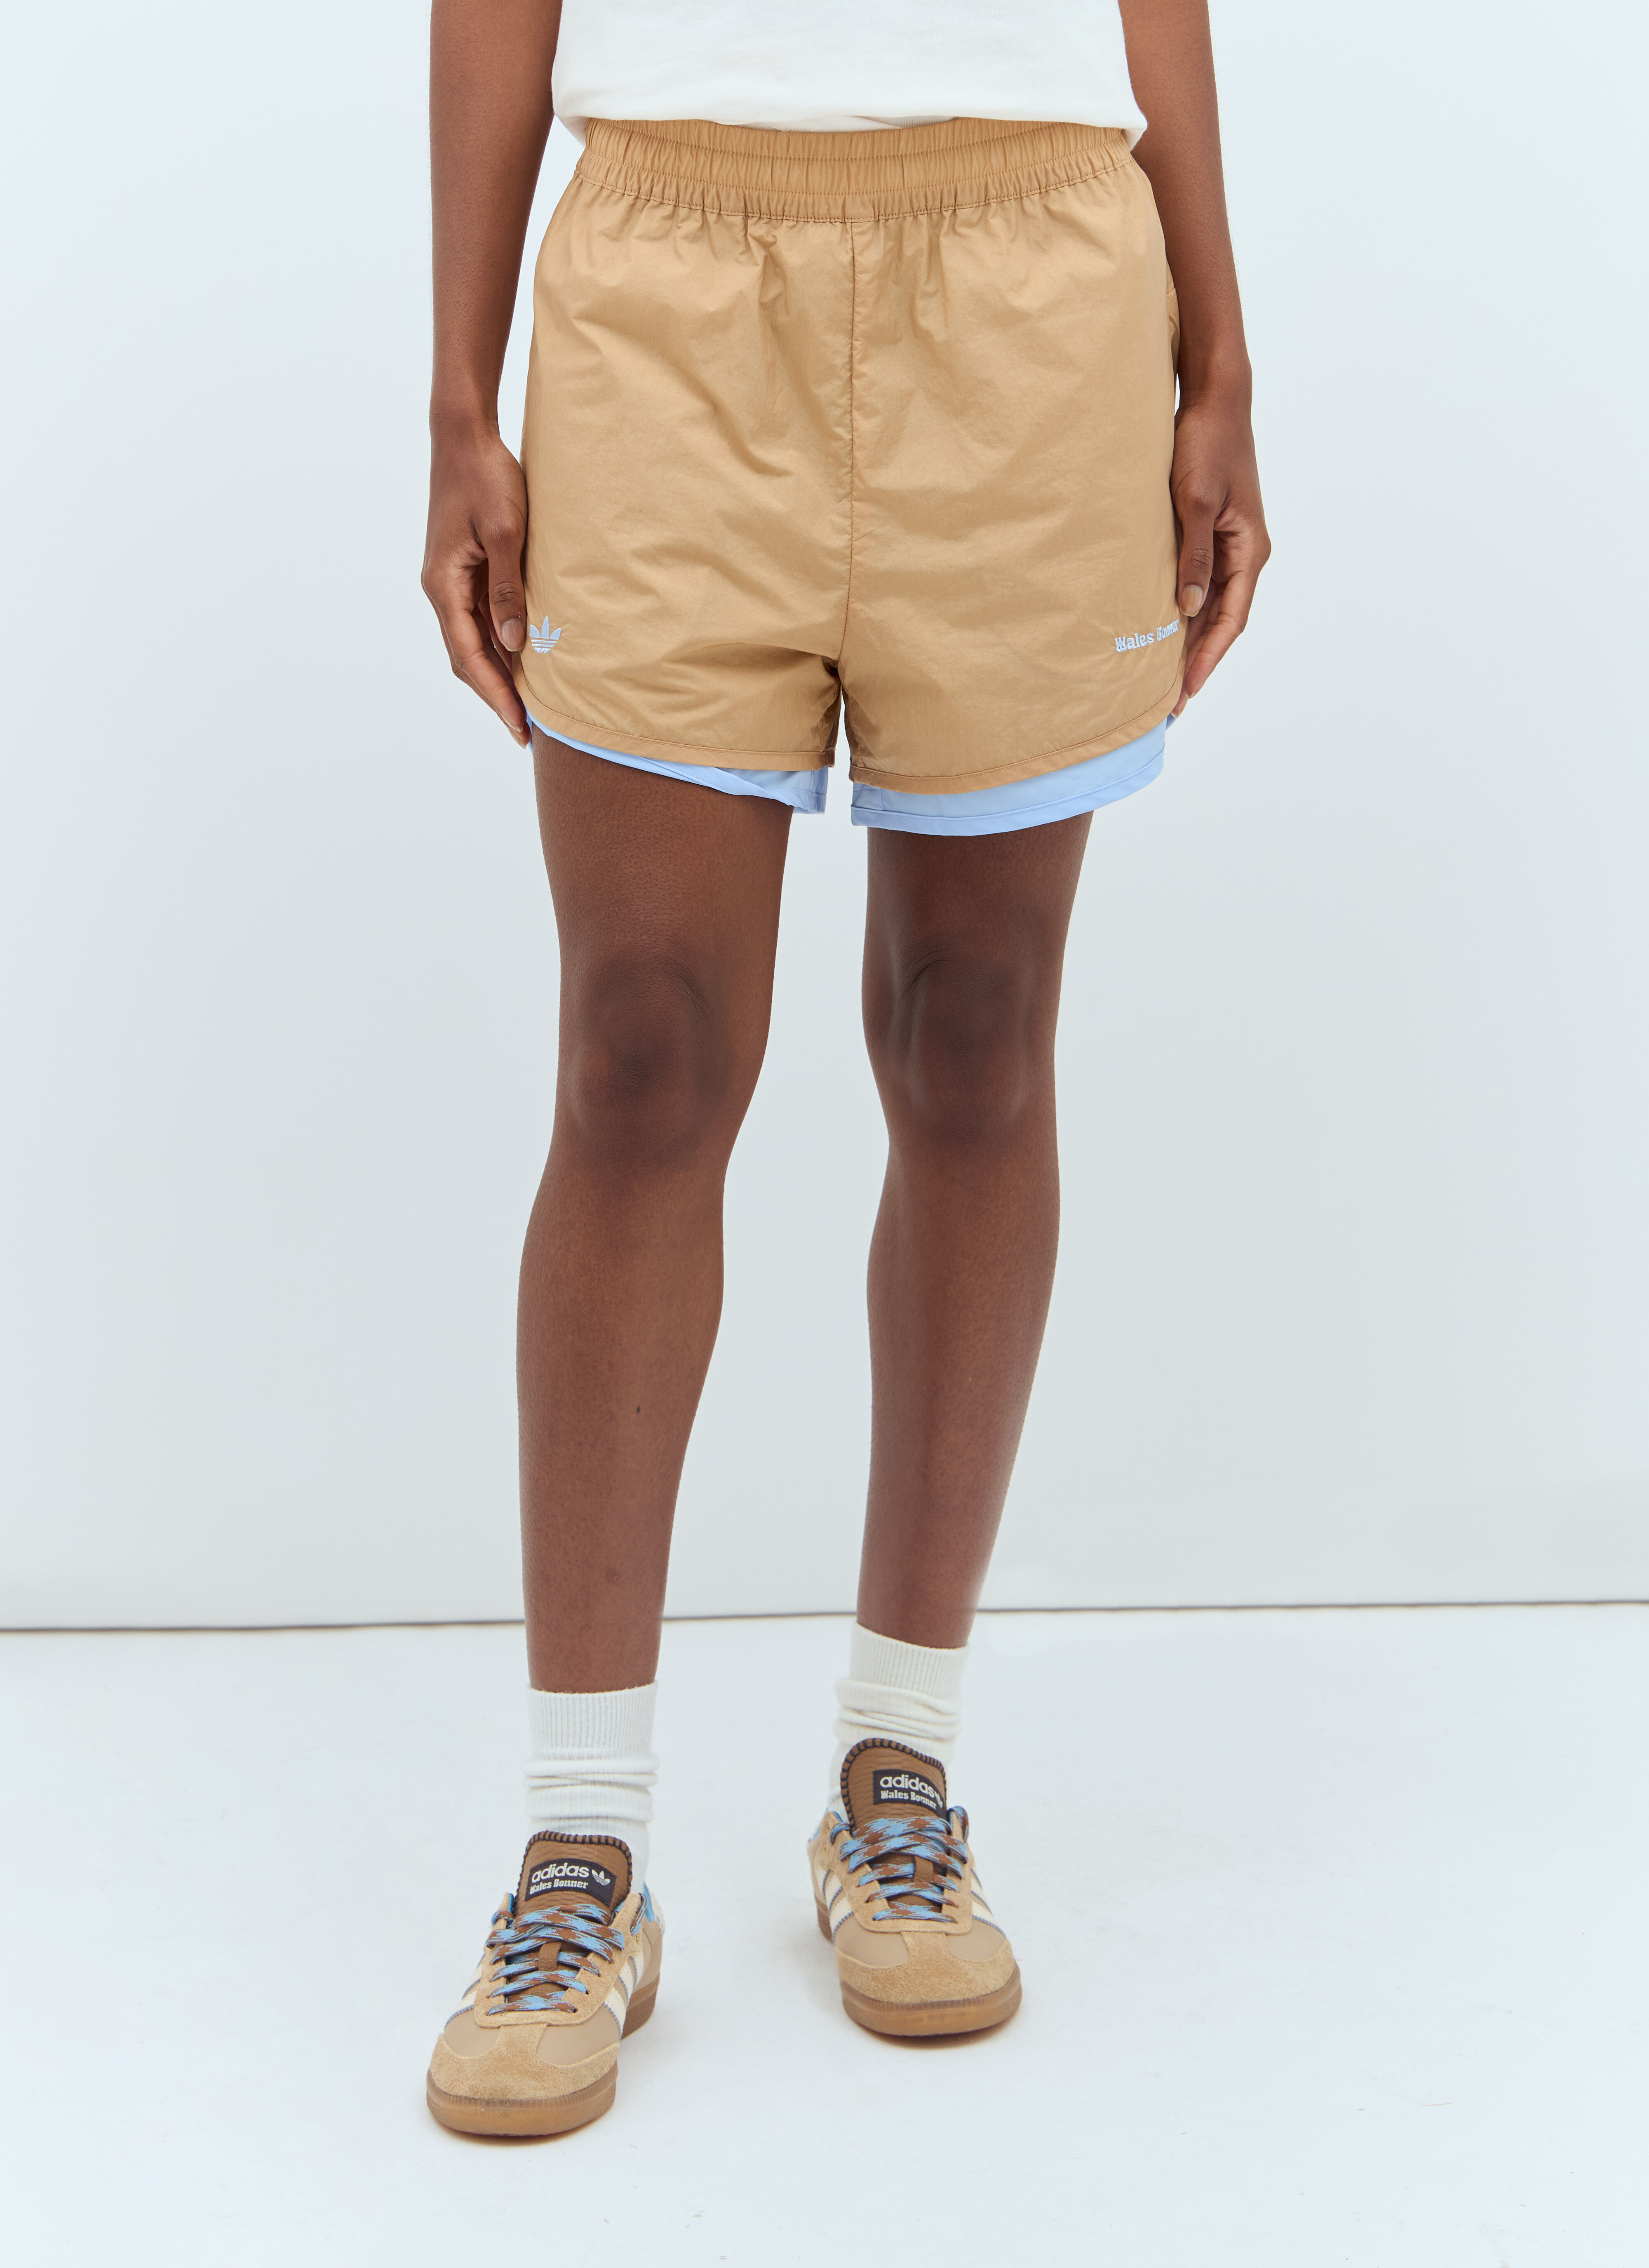 Acne Studios Nylon Double-Layered Shorts Black acn0257010